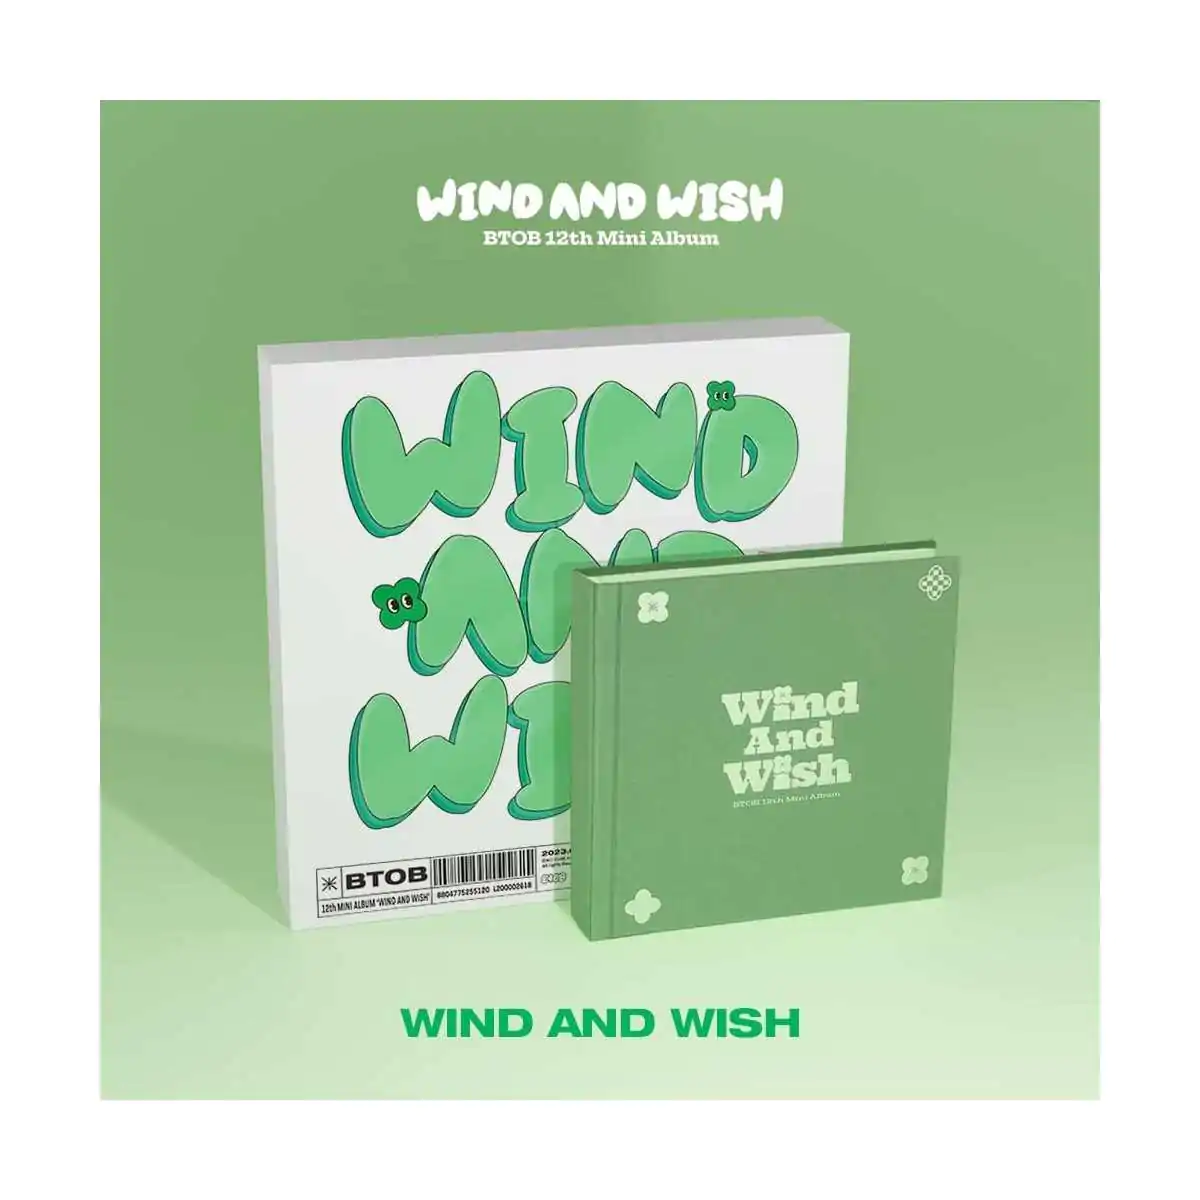 BTOB - WIND AND WISH (WIND Version) (12th Mini Album) 